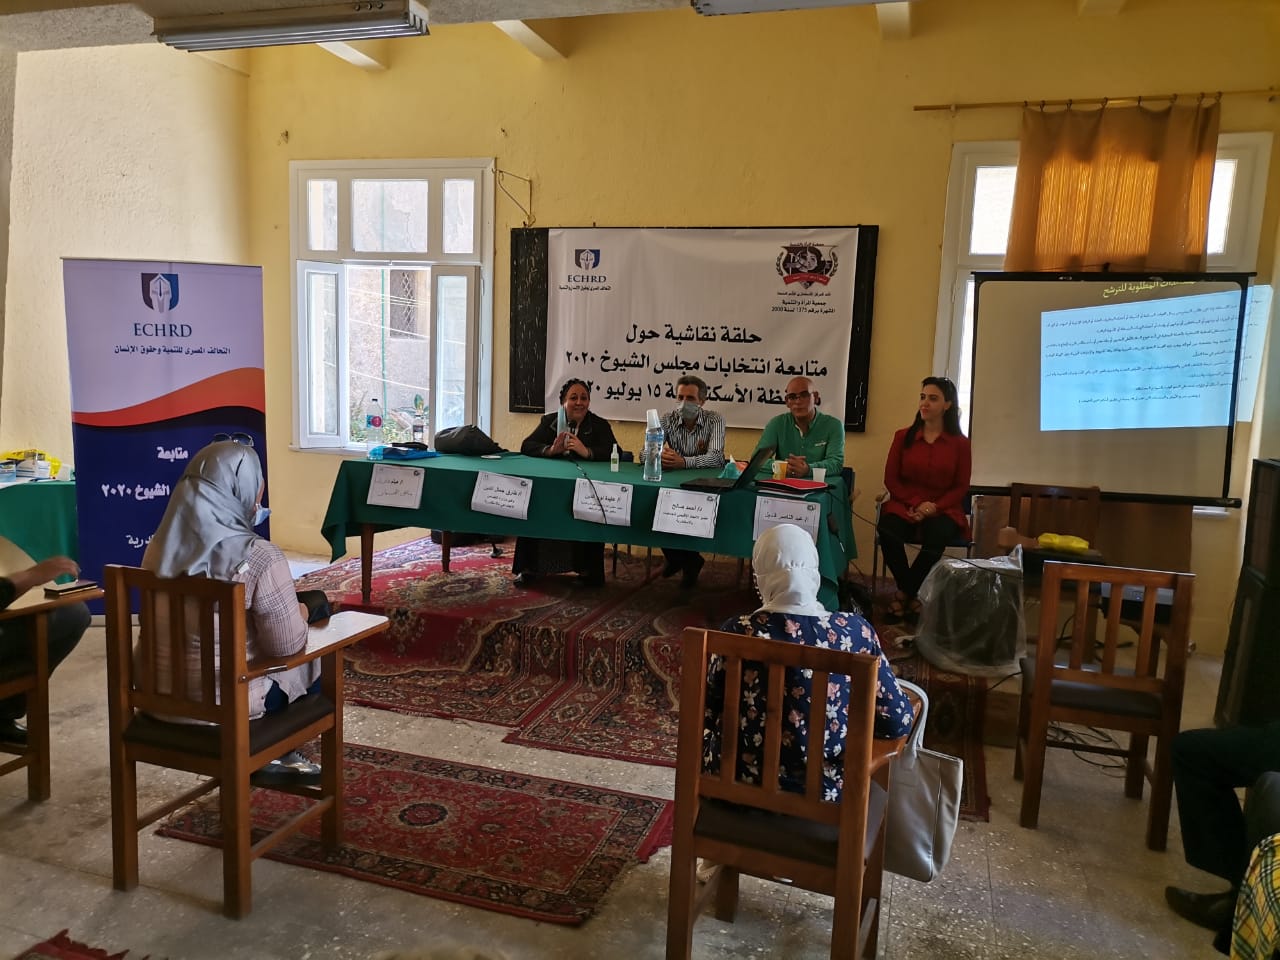   الدورة التدريبية الثالثة للتحالف المصرى لحقوق الانسان والتنمية بالتعاون مع جمعية المرأة والتنمية بالإسكندرية